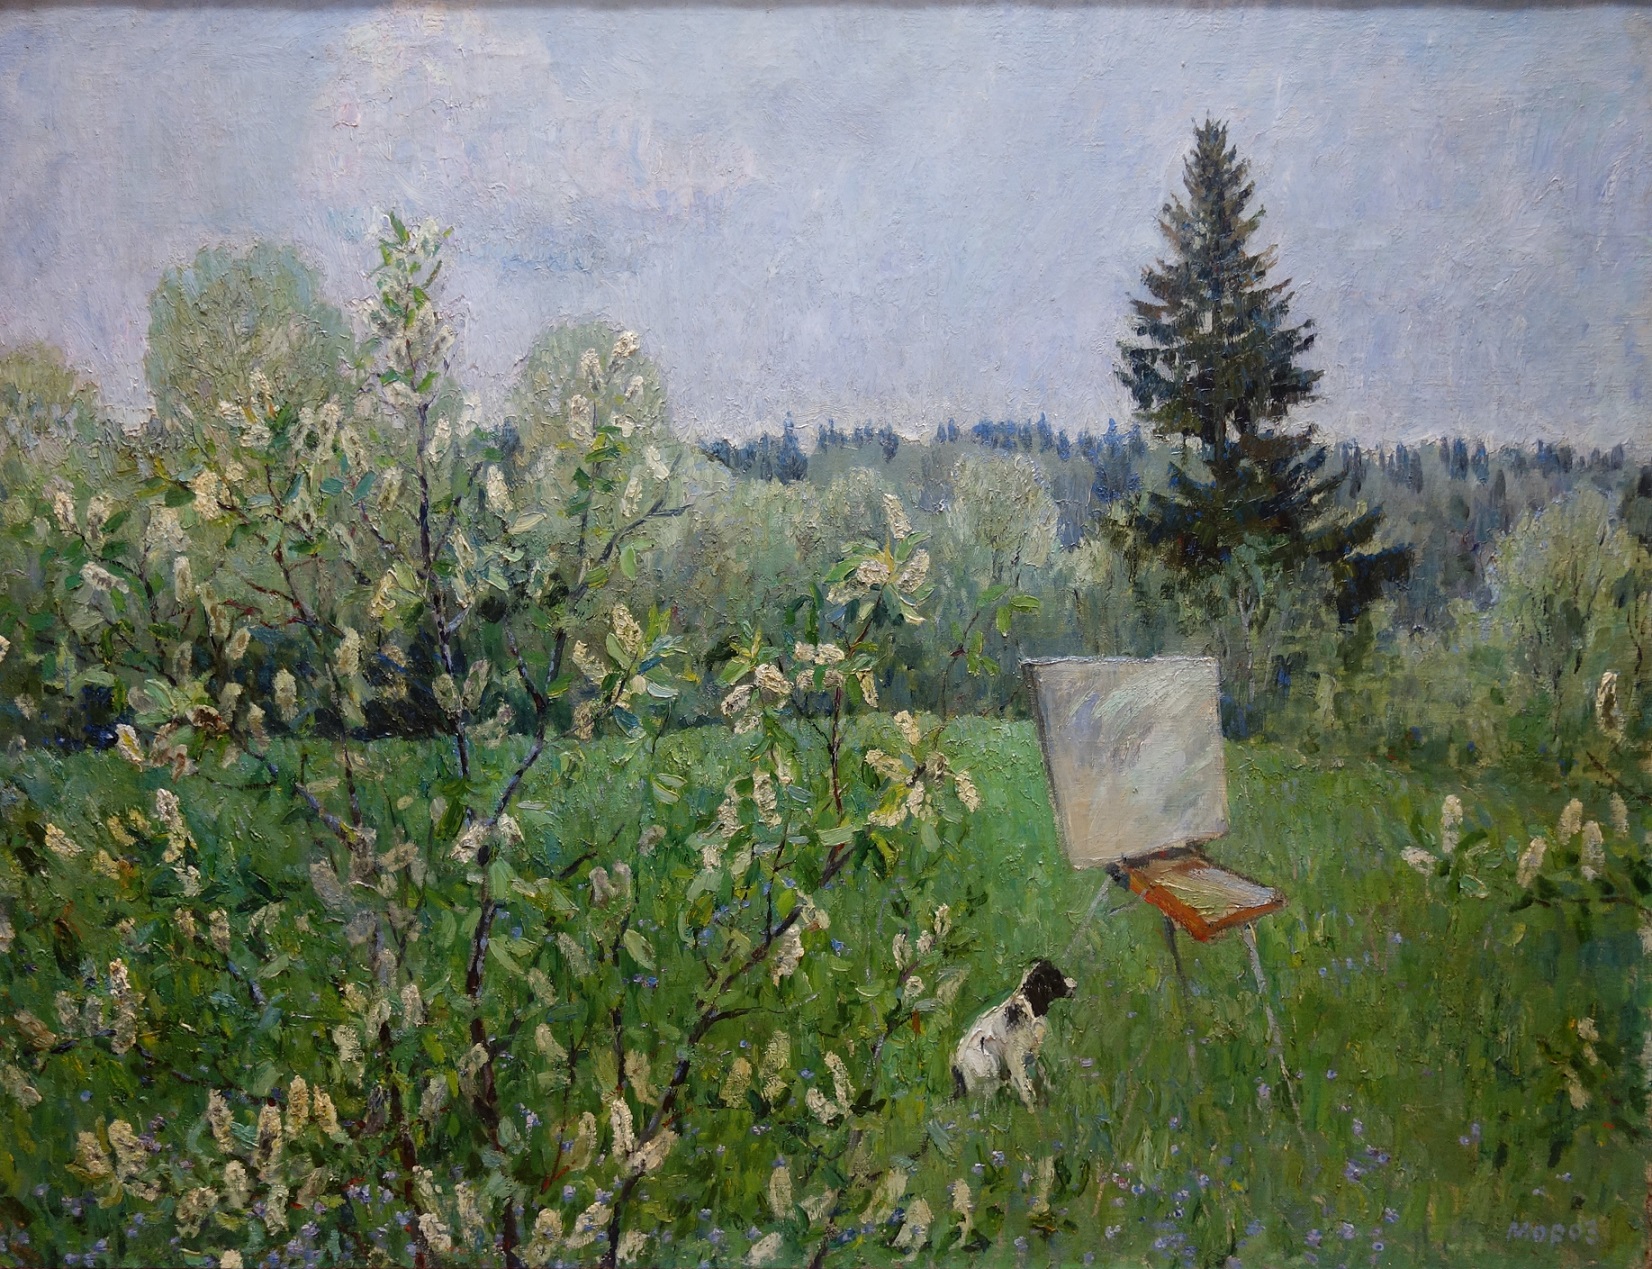 Moroz, pittura russa, post impressionismo russo, Impressionismo sovietico, paesaggio, cane, cavalletto